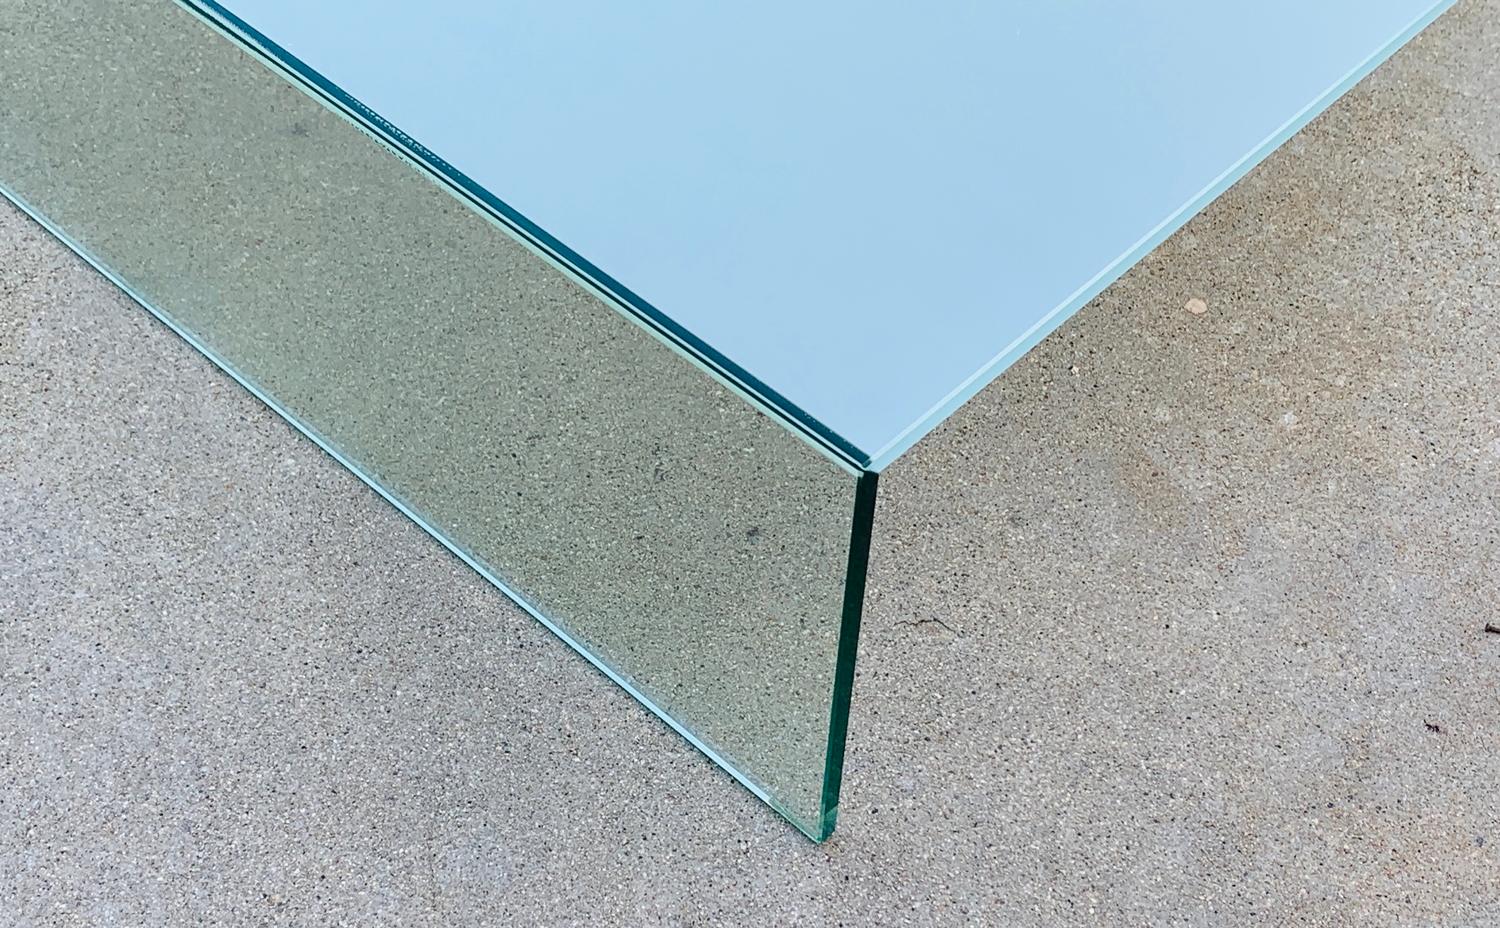 Voici l'exquise table basse en verre de Piero Lissoni pour Glas Italia, Italie 2018. Cette pièce étonnante combine un design moderne, un savoir-faire italien et une touche d'élégance pour élever n'importe quel espace de vie.

La table présente un